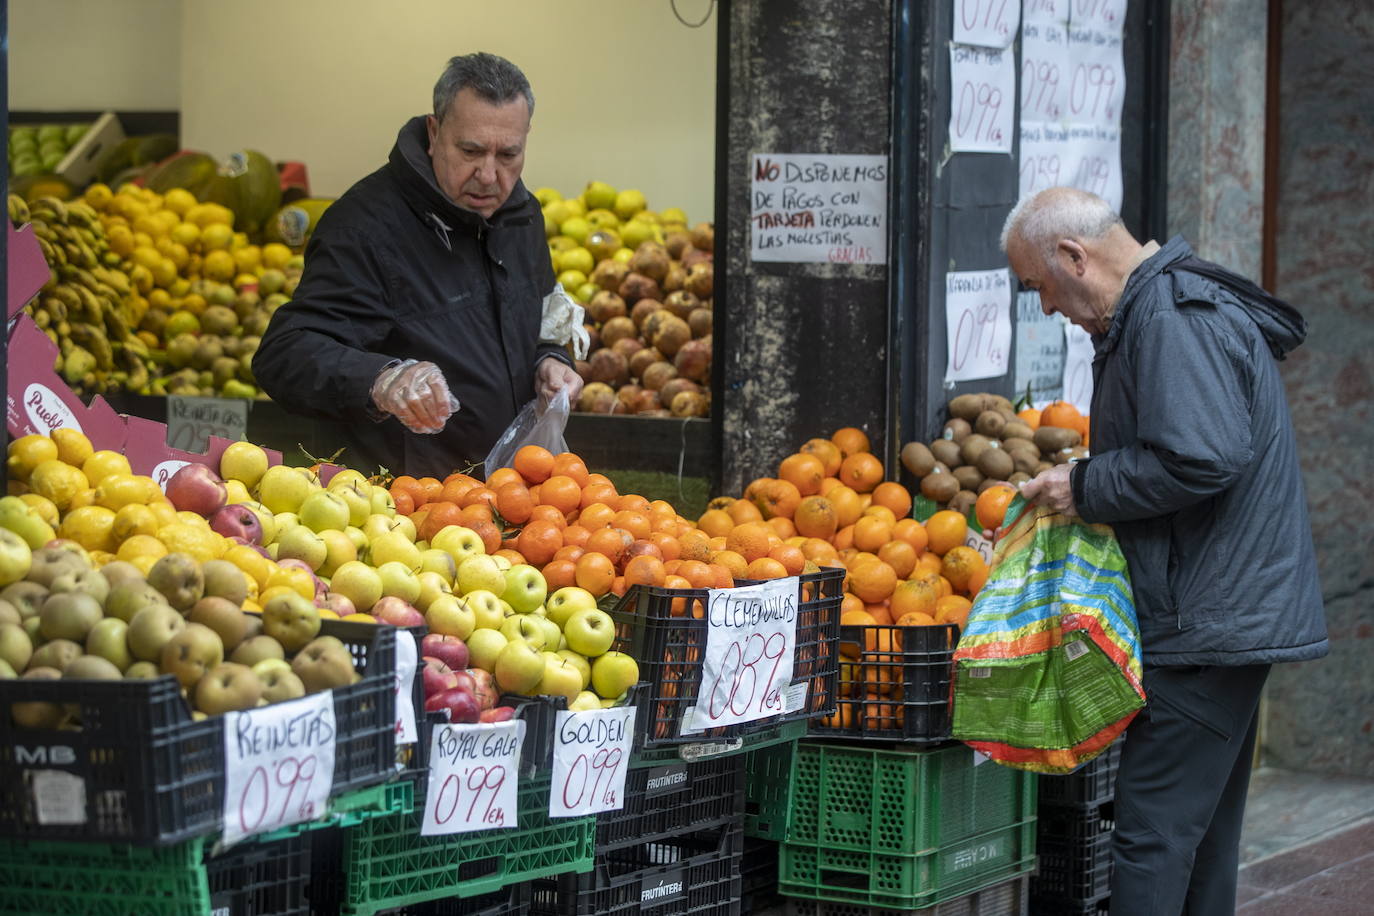 Establecimiento de venta de fruta y verdura.